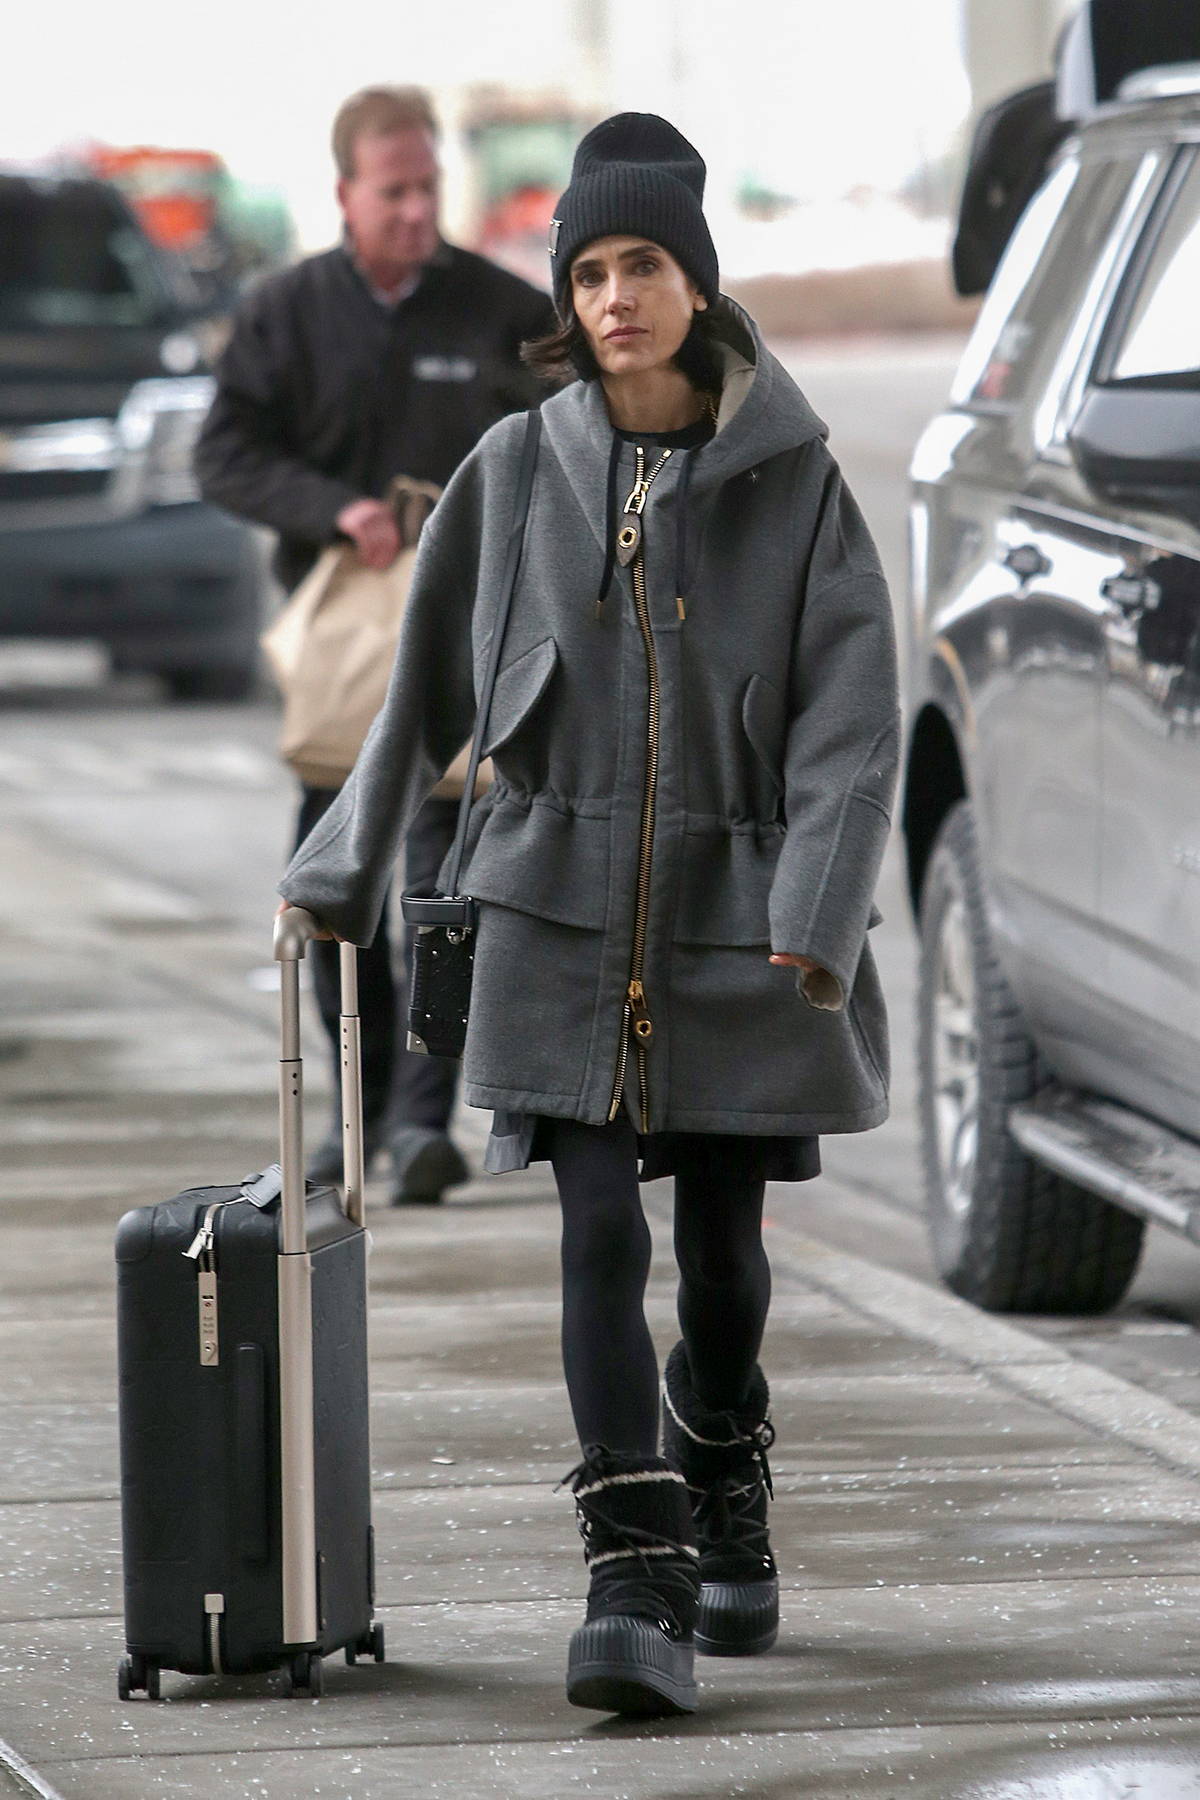 SNEAK PEEK : Snowpiercer - Jennifer Connelly for Louis Vuitton